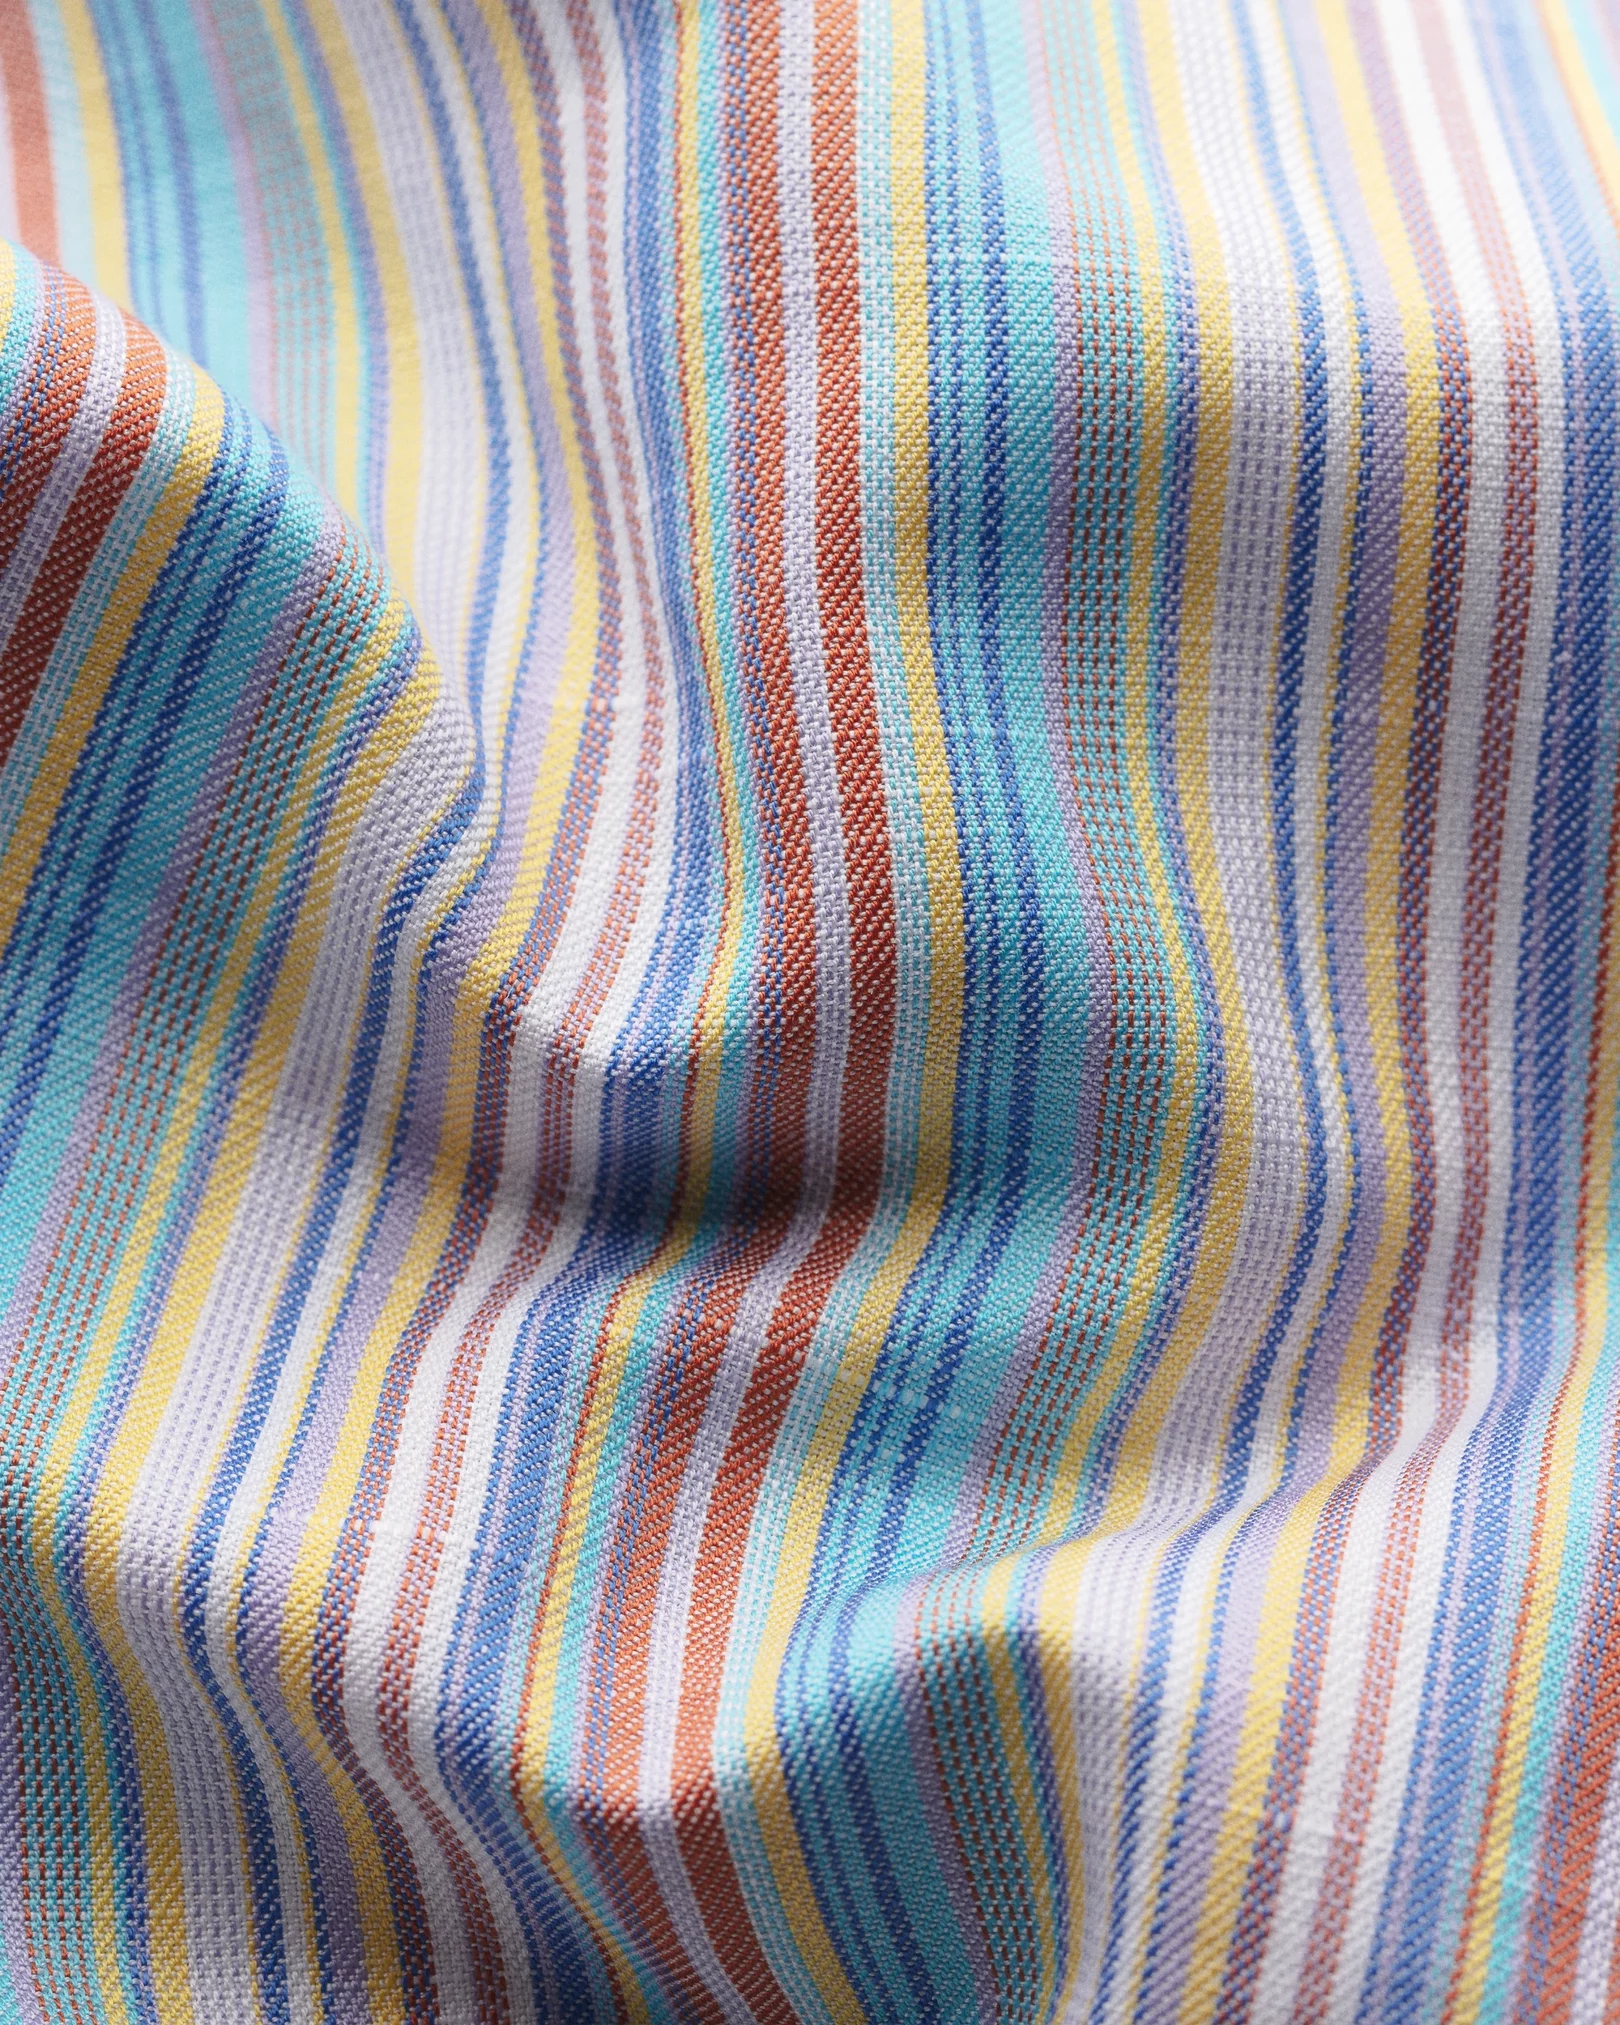 Eton - multistripe cotton linen shirt